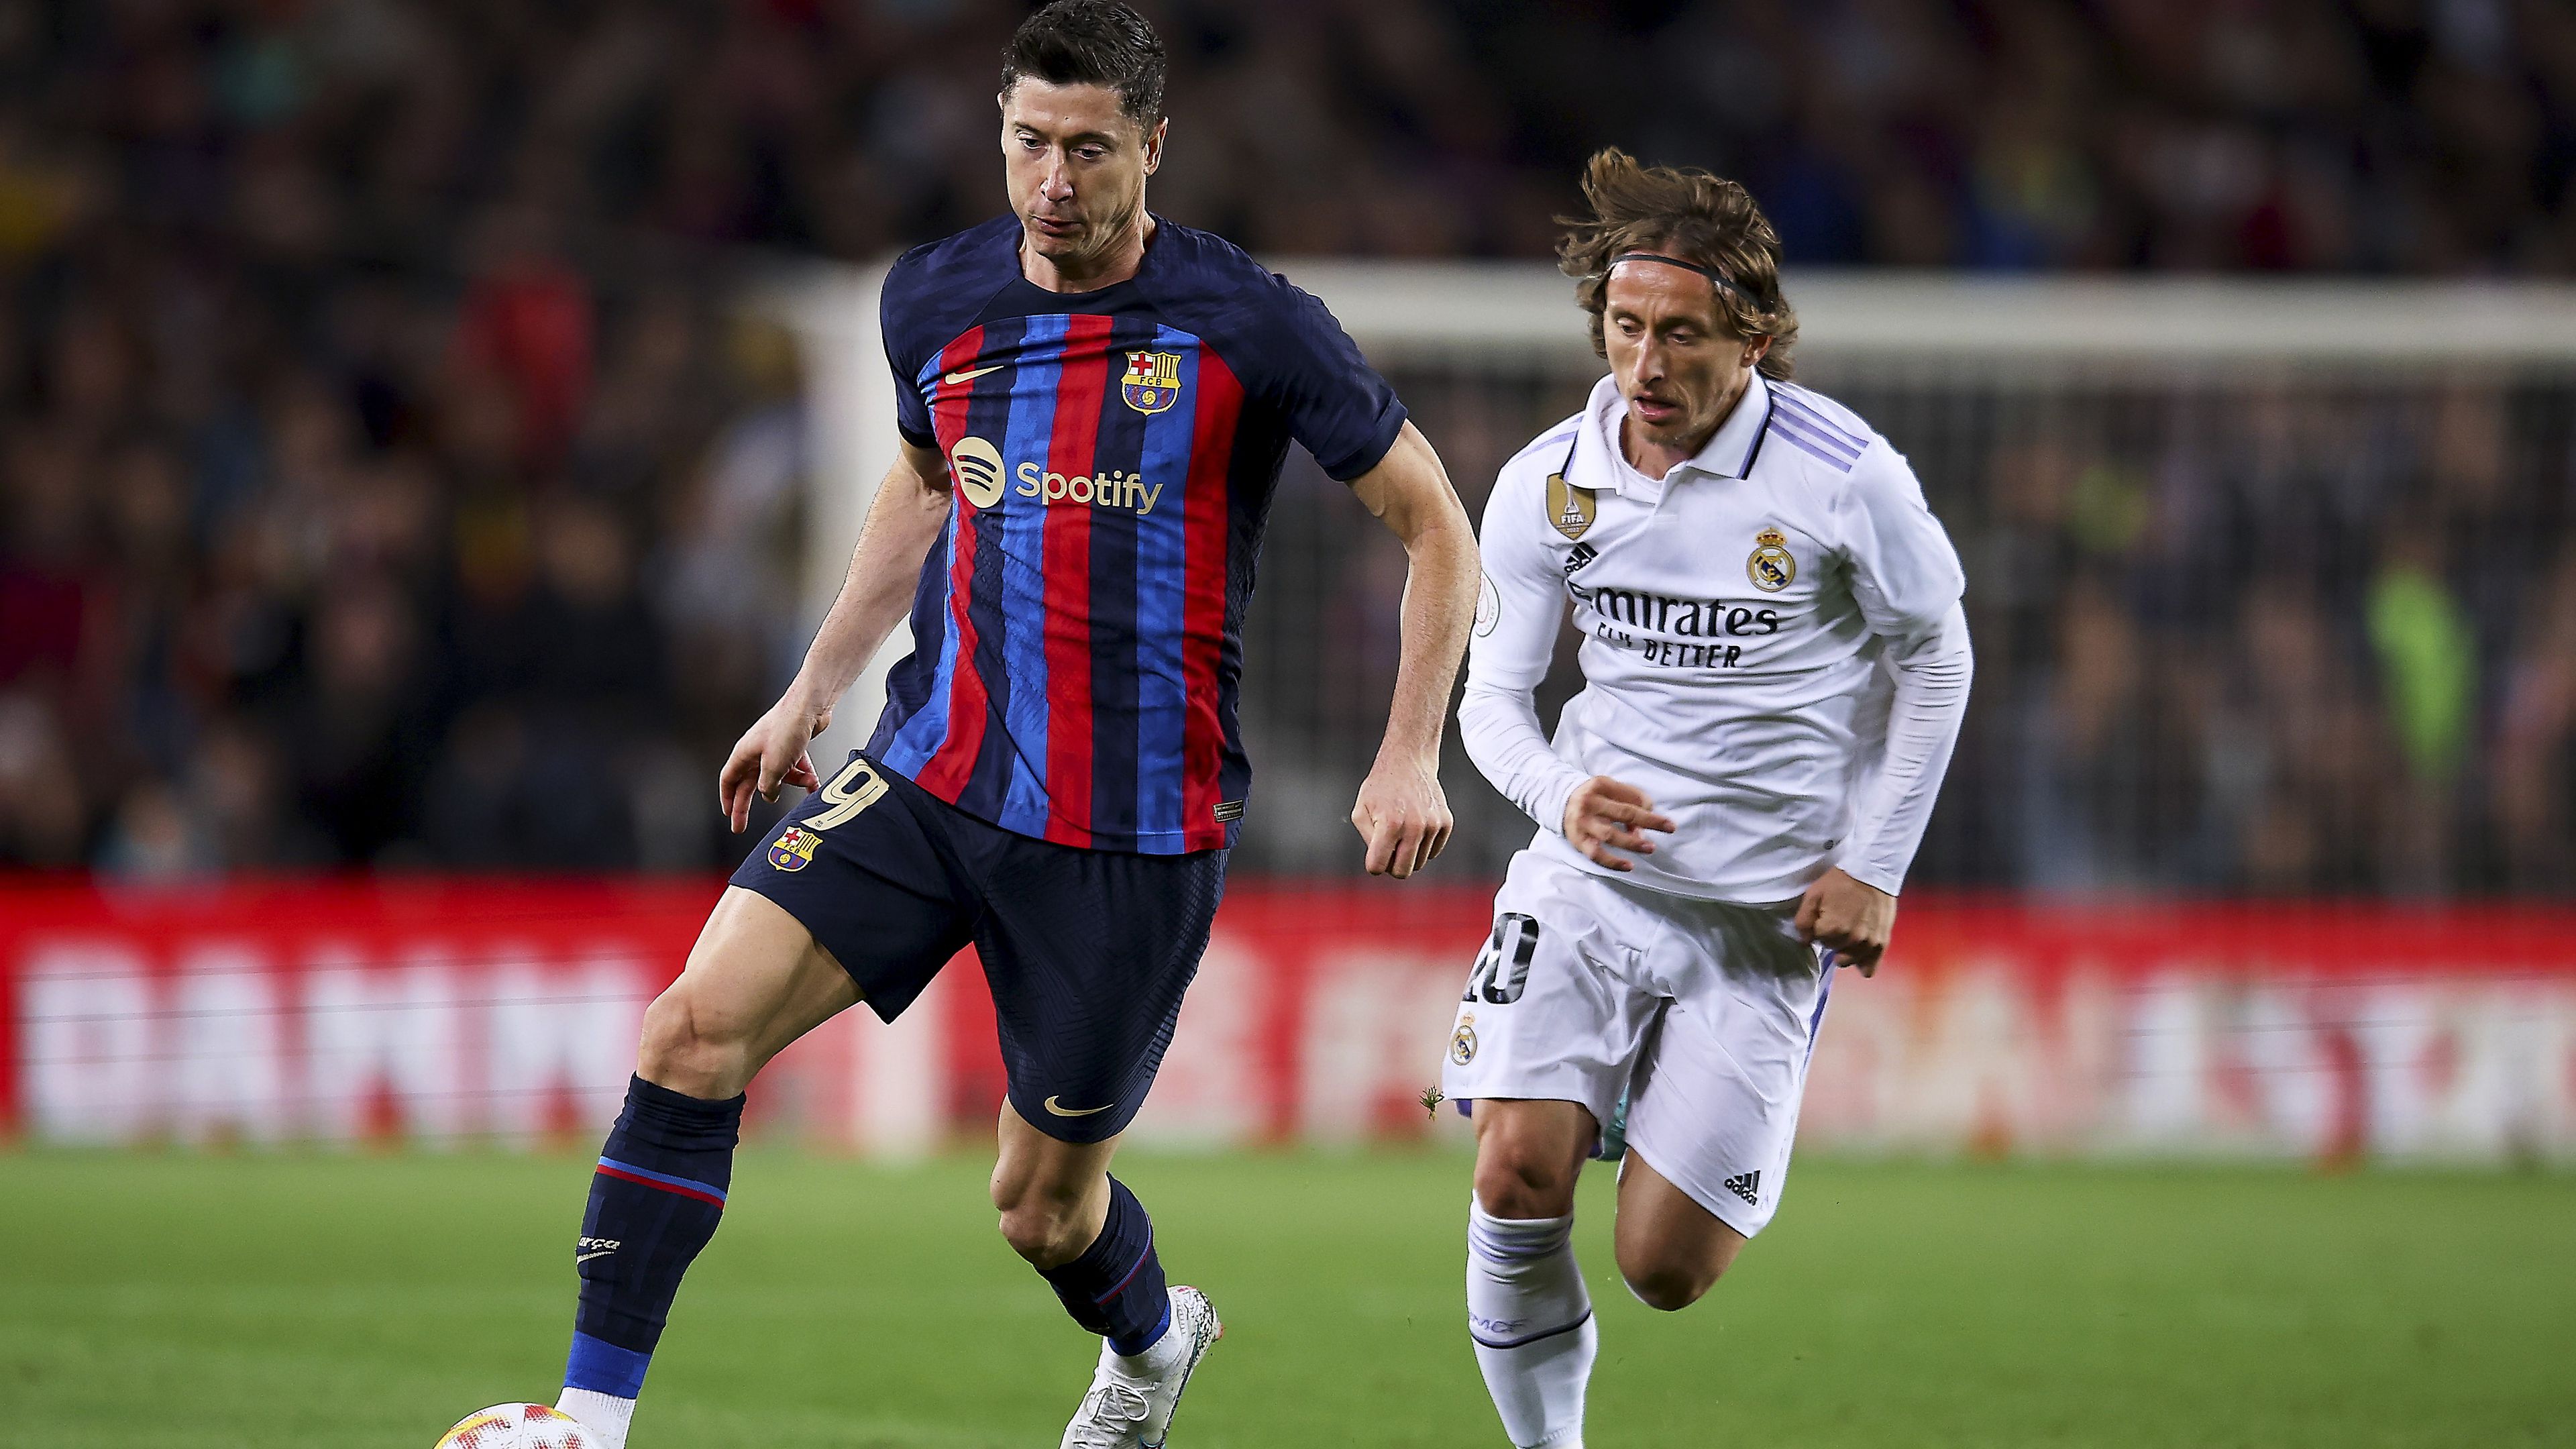 A bajnoki aranyért vélhetően ezúttal is Robert Lewandoski (balra) és Luka Modric csapata verseng majd – de vajon az Atlético Madrid beleszólhat a Barcelona–Real Madrid versenyfutásba?